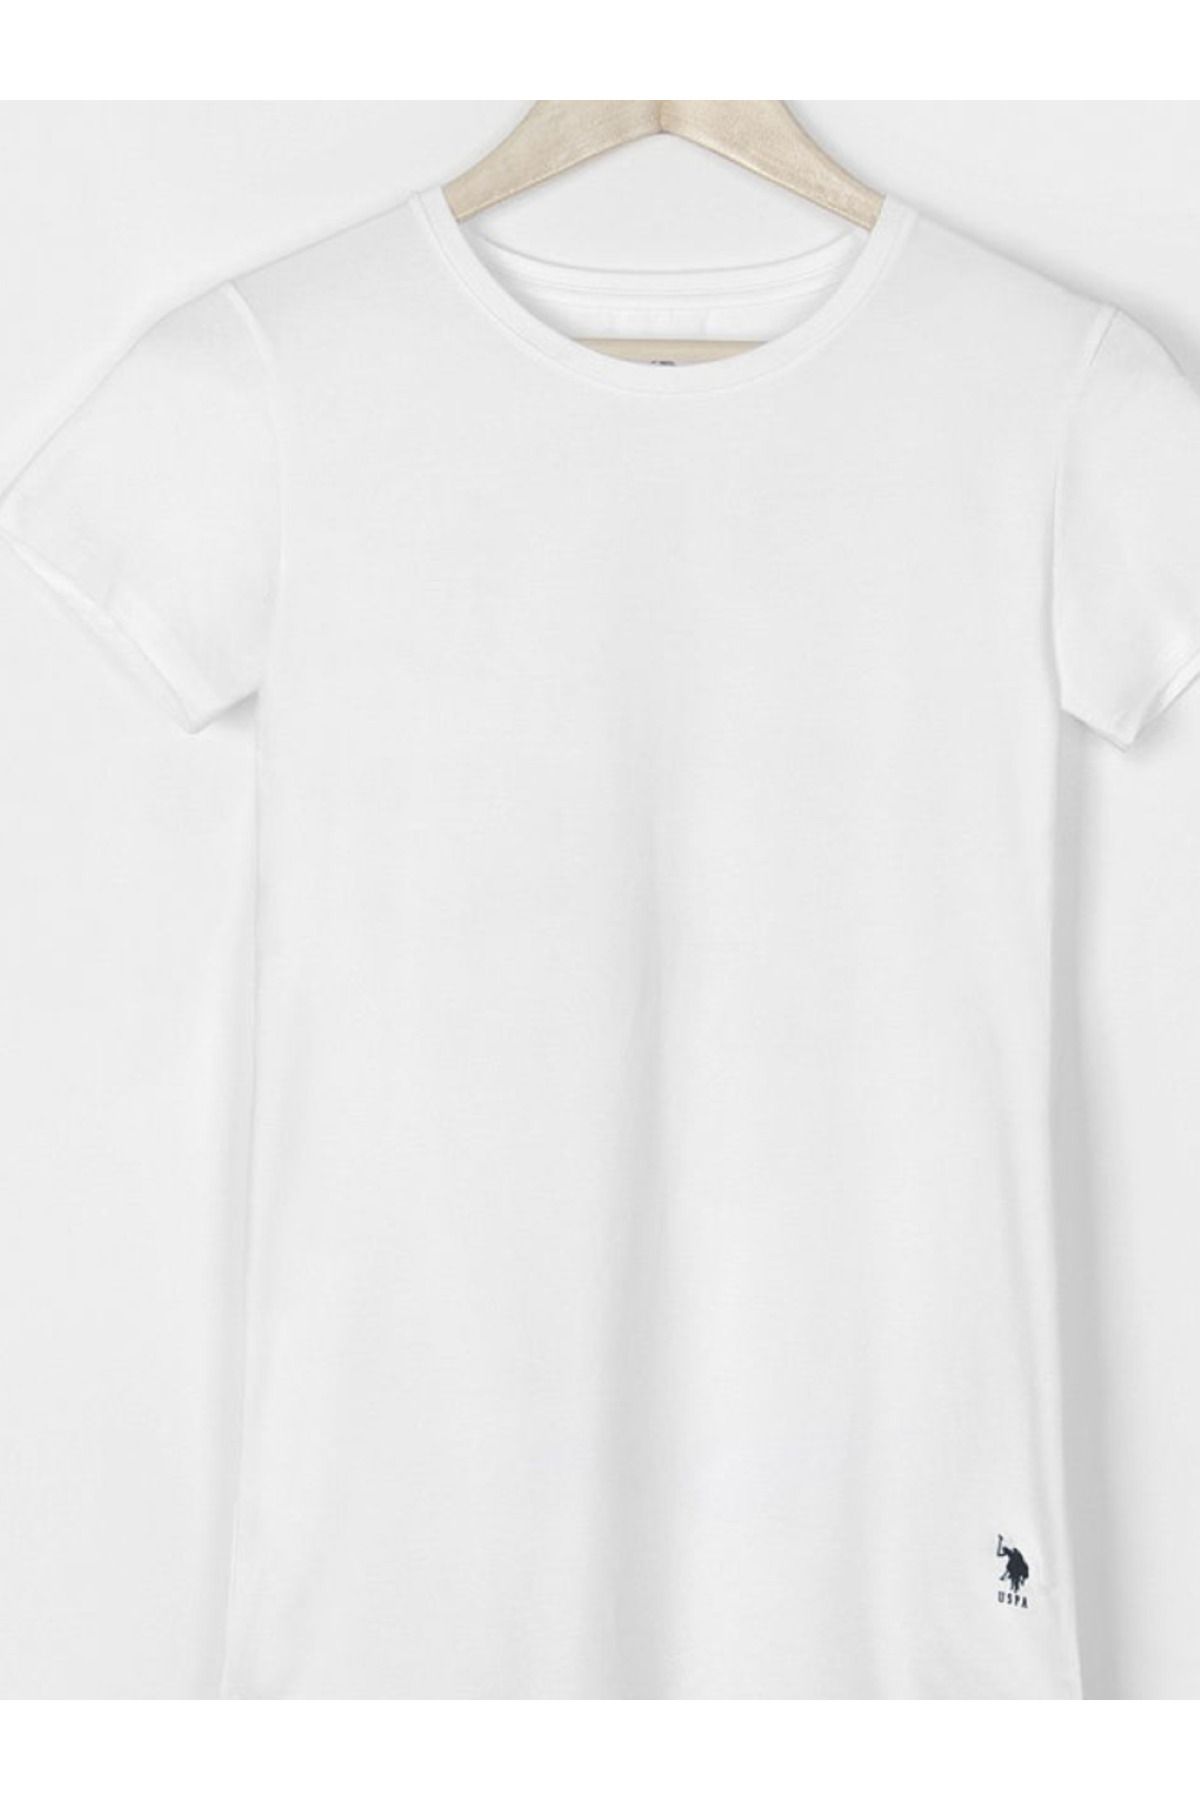 U.S. Polo Assn. Kadın Pamuklu İnce Beyaz Yuvarlak Yaka T-shirt